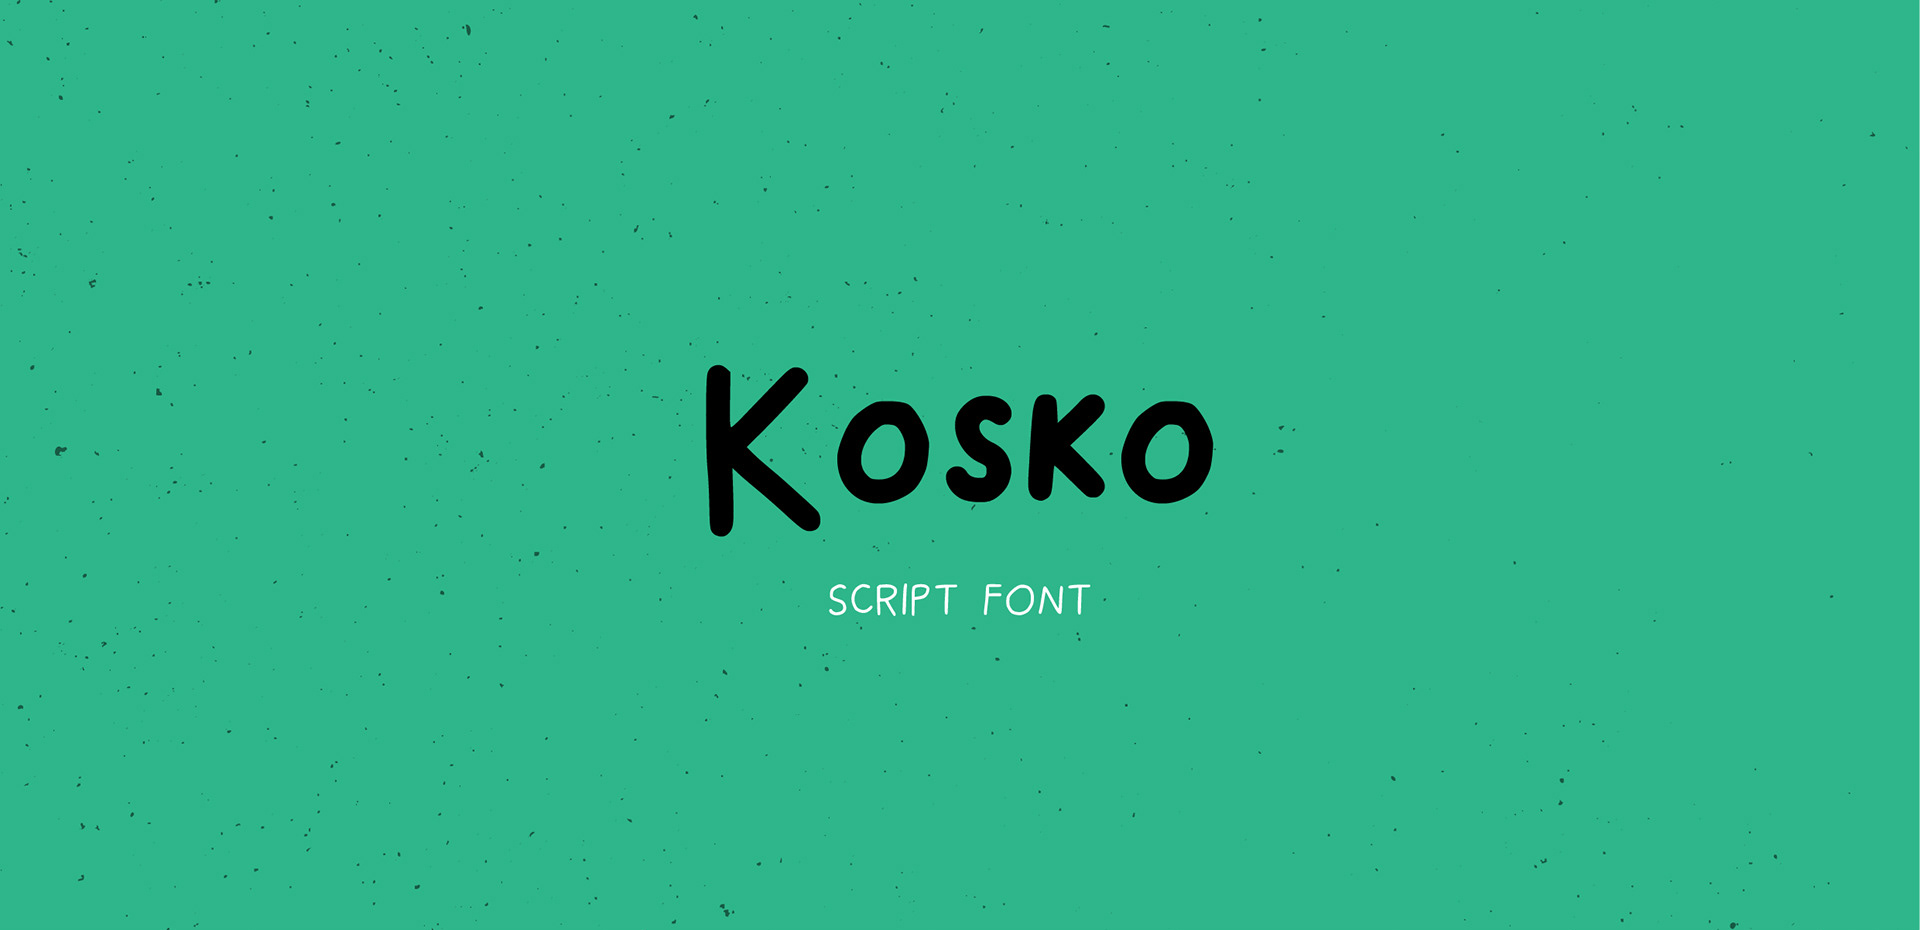 Ejemplo de fuente Kosko